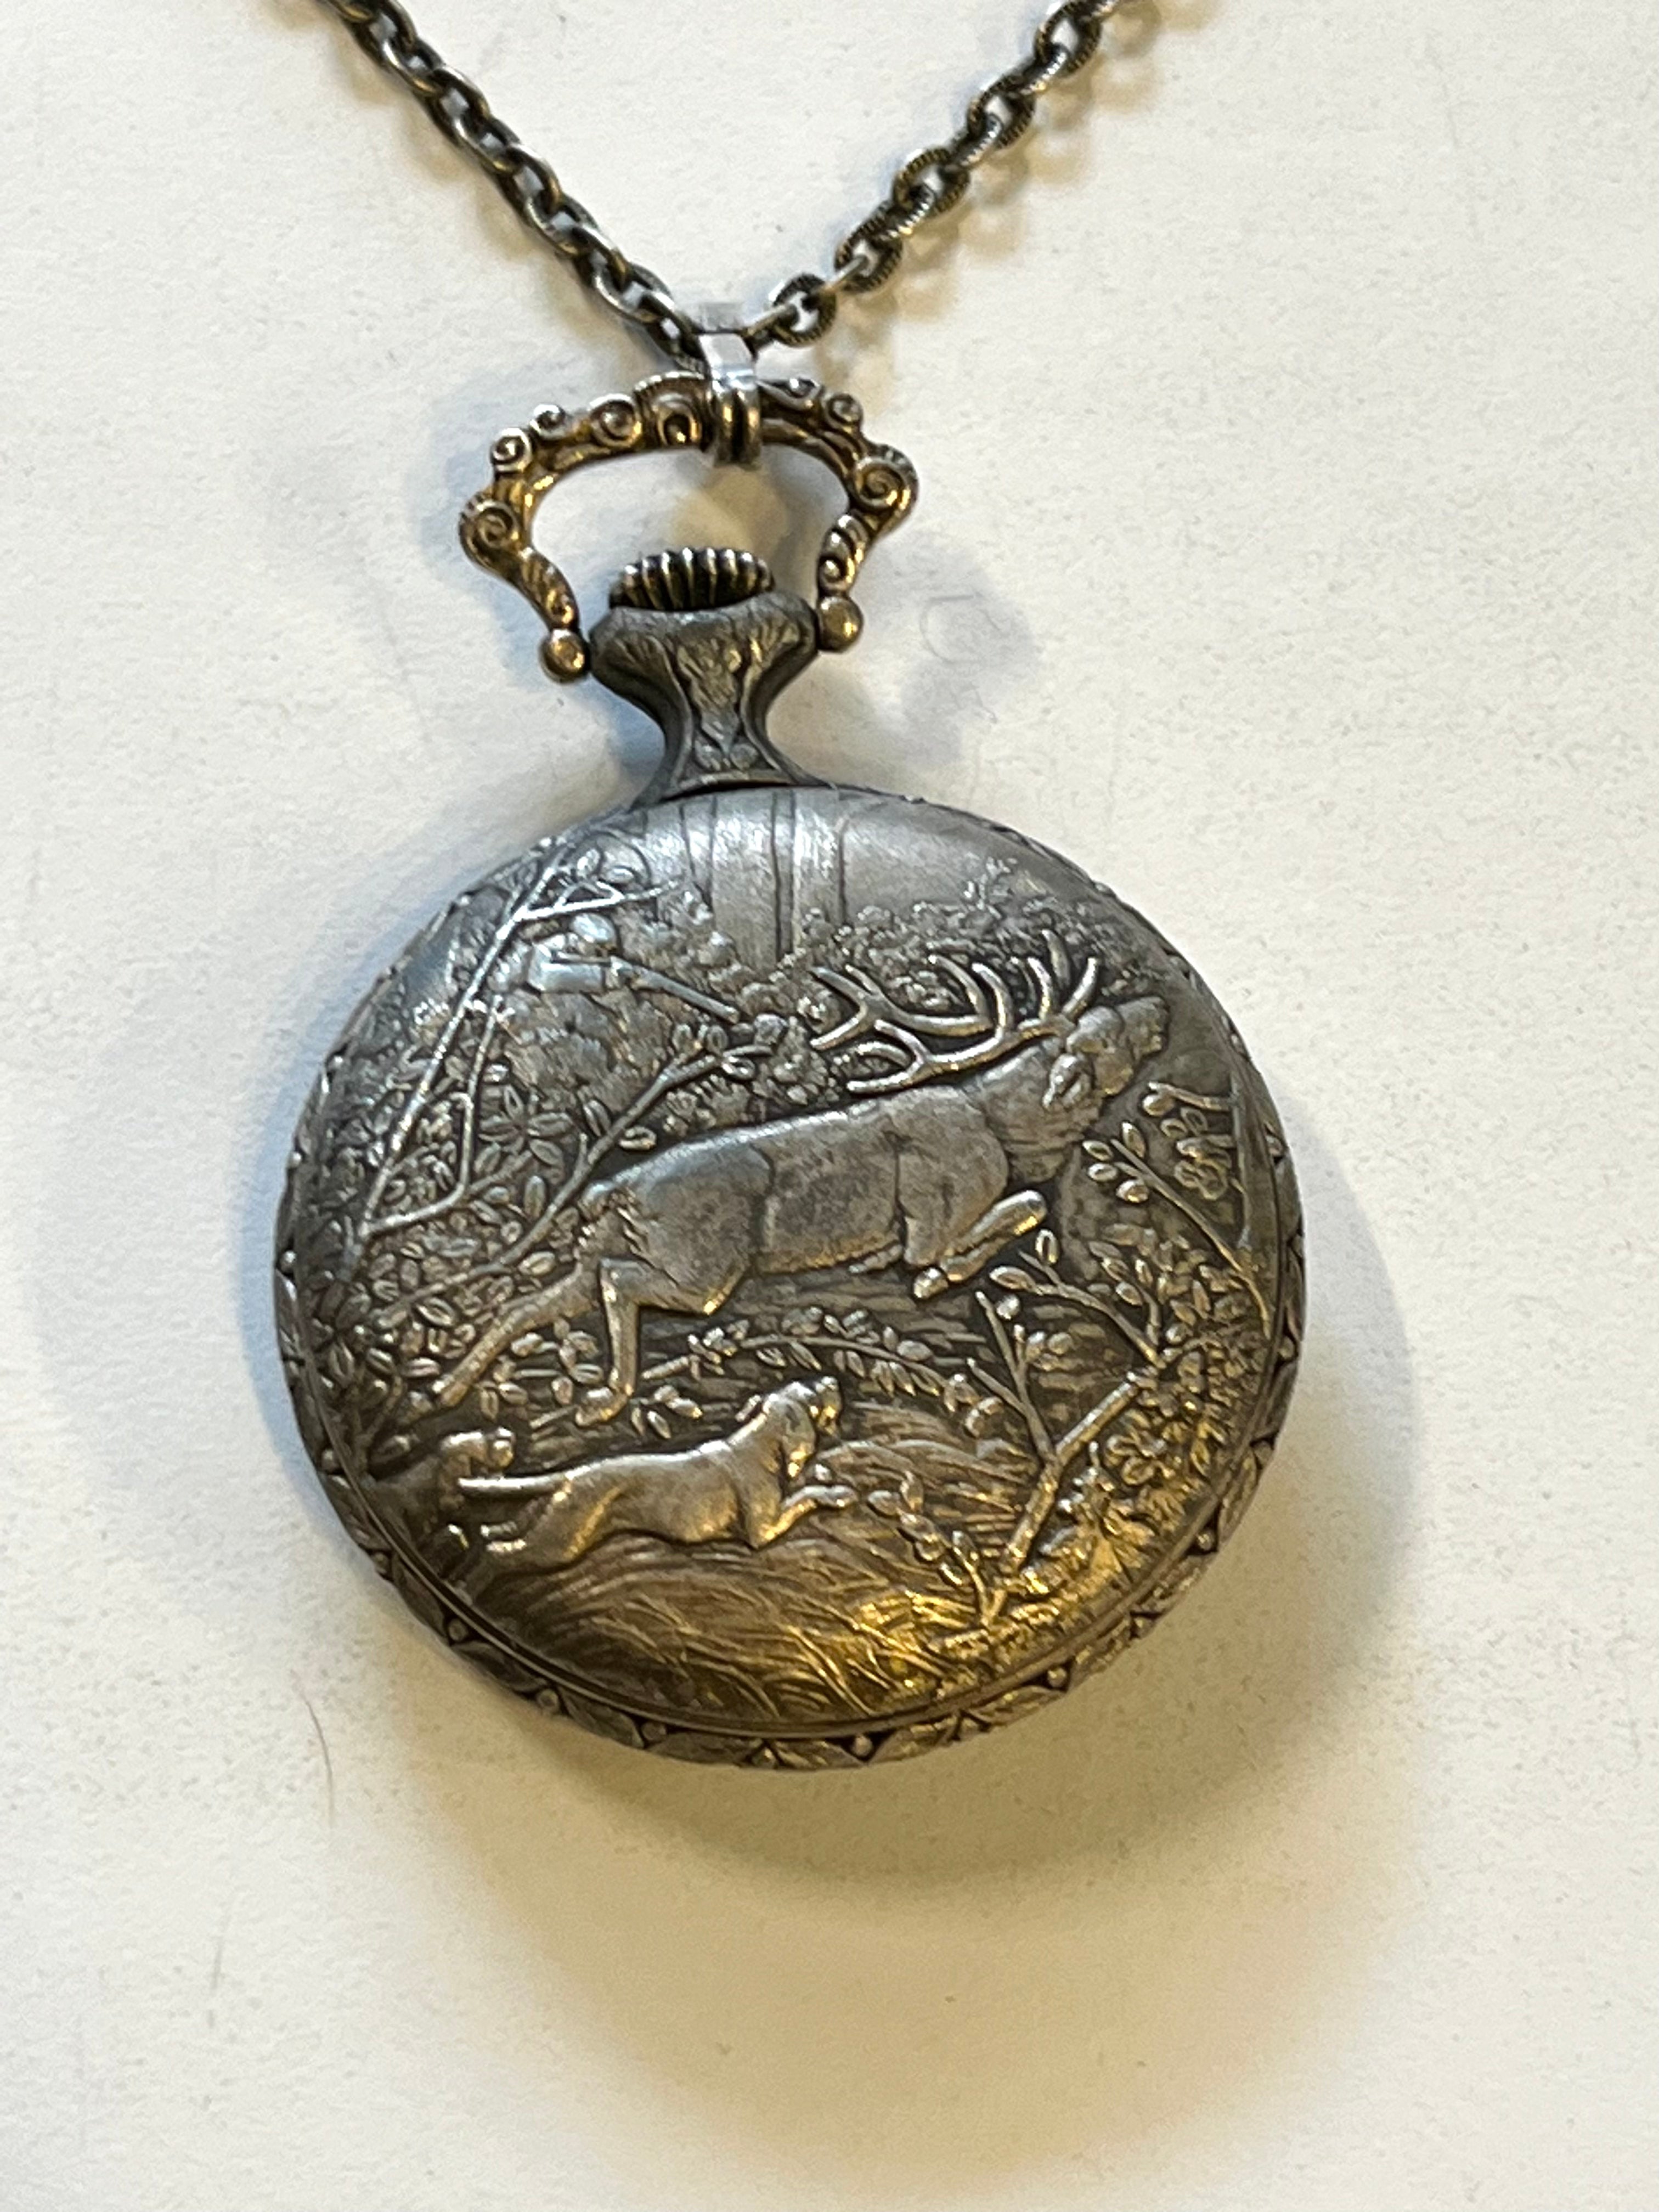 Vintage Elgin Pocket Watch 17 Jewel With Deer/ Elk Hunting